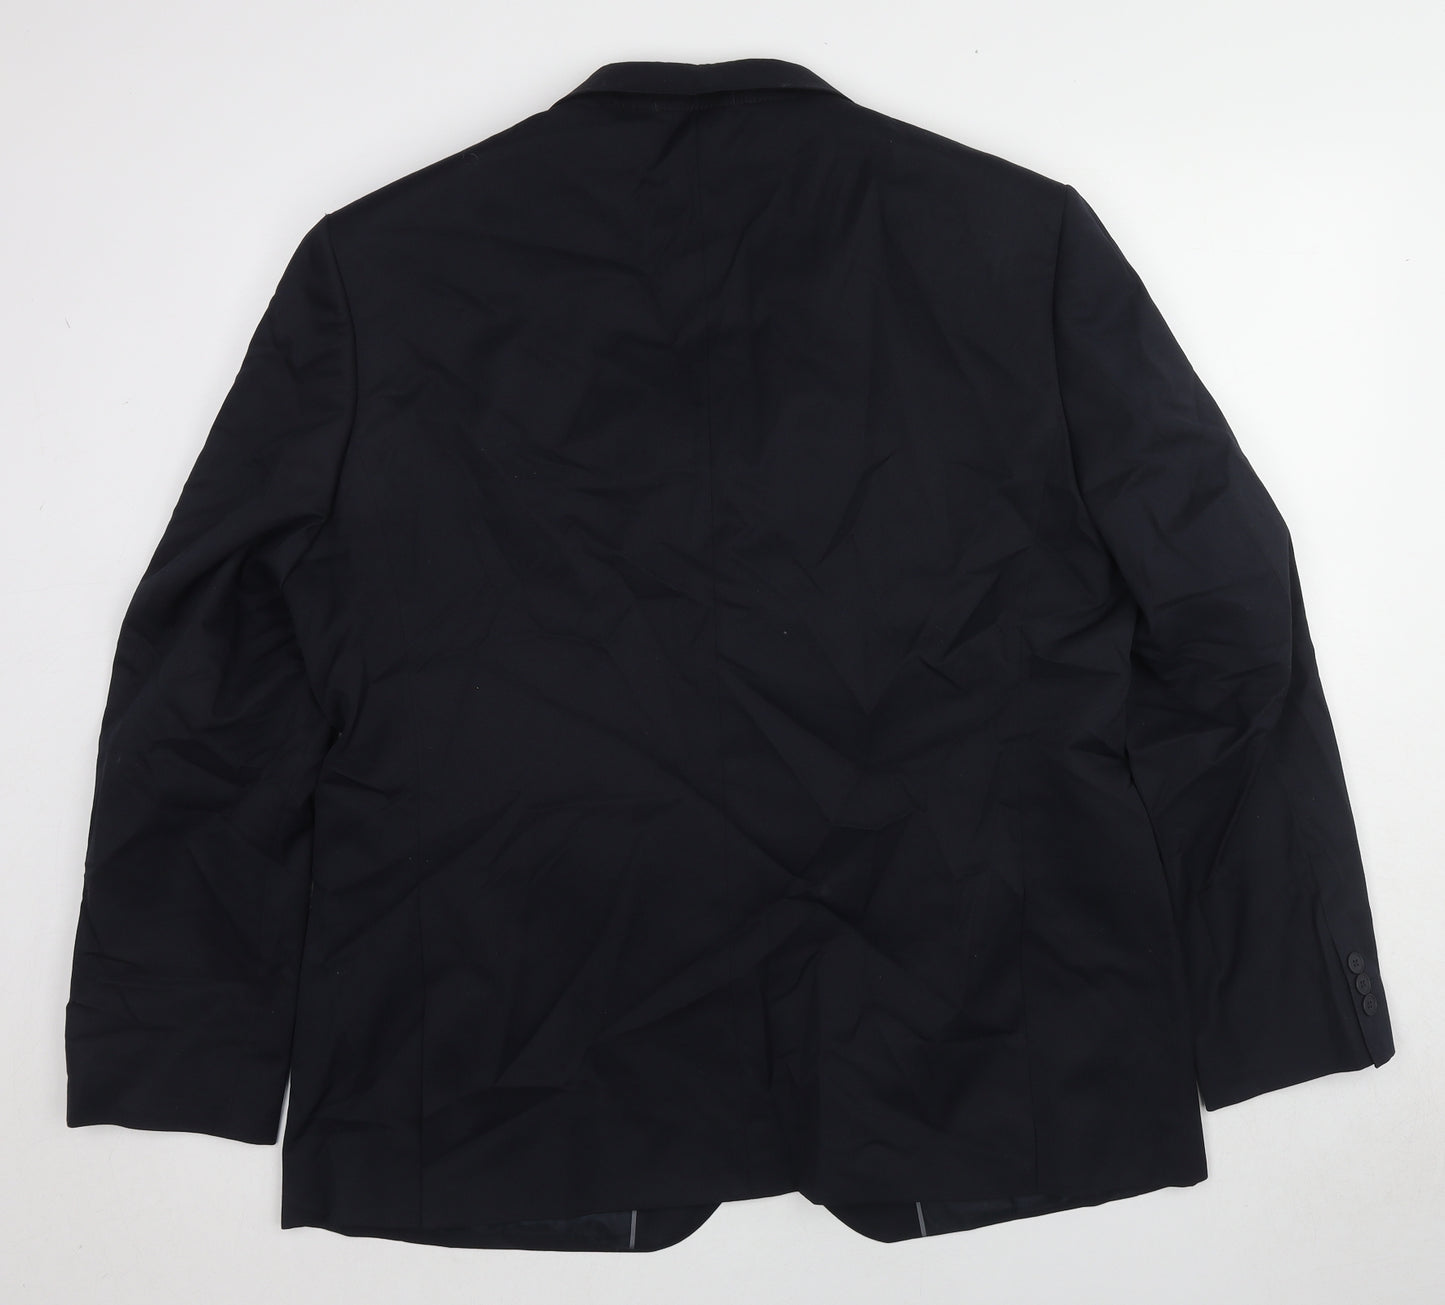 Marks and Spencer Mens Black Polyester Jacket Suit Jacket Size 46 Regular